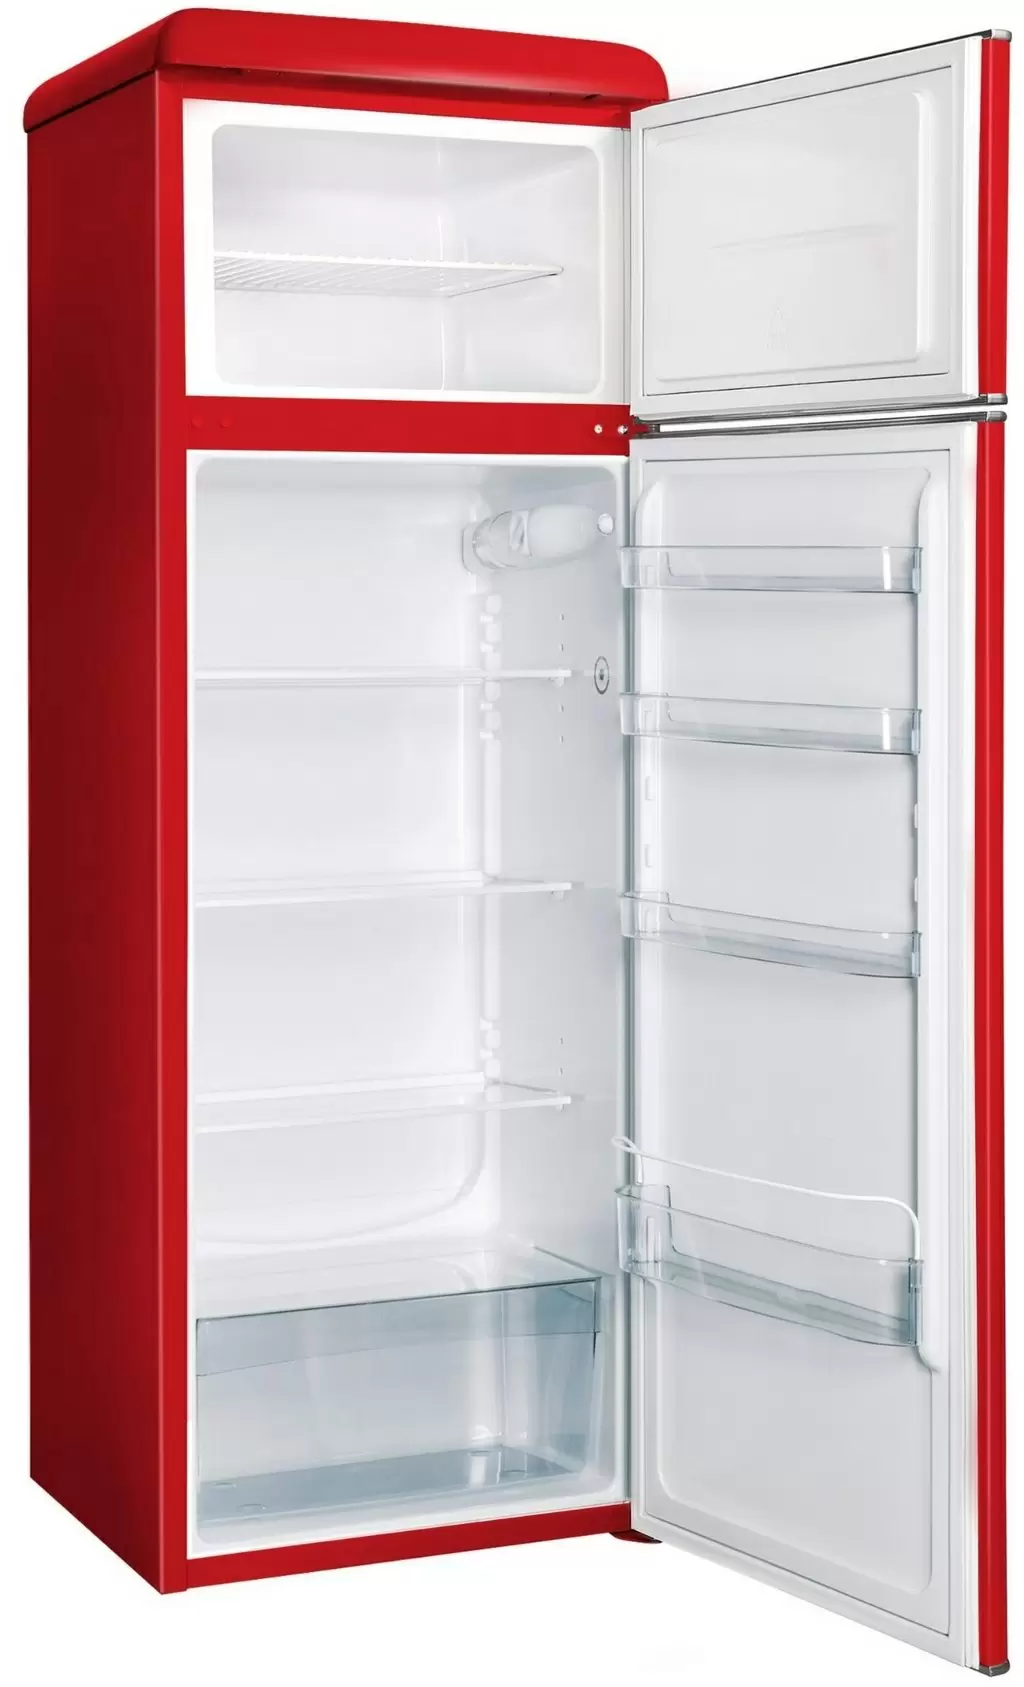 Холодильник Snaige FR26SM-PRR50E, красный